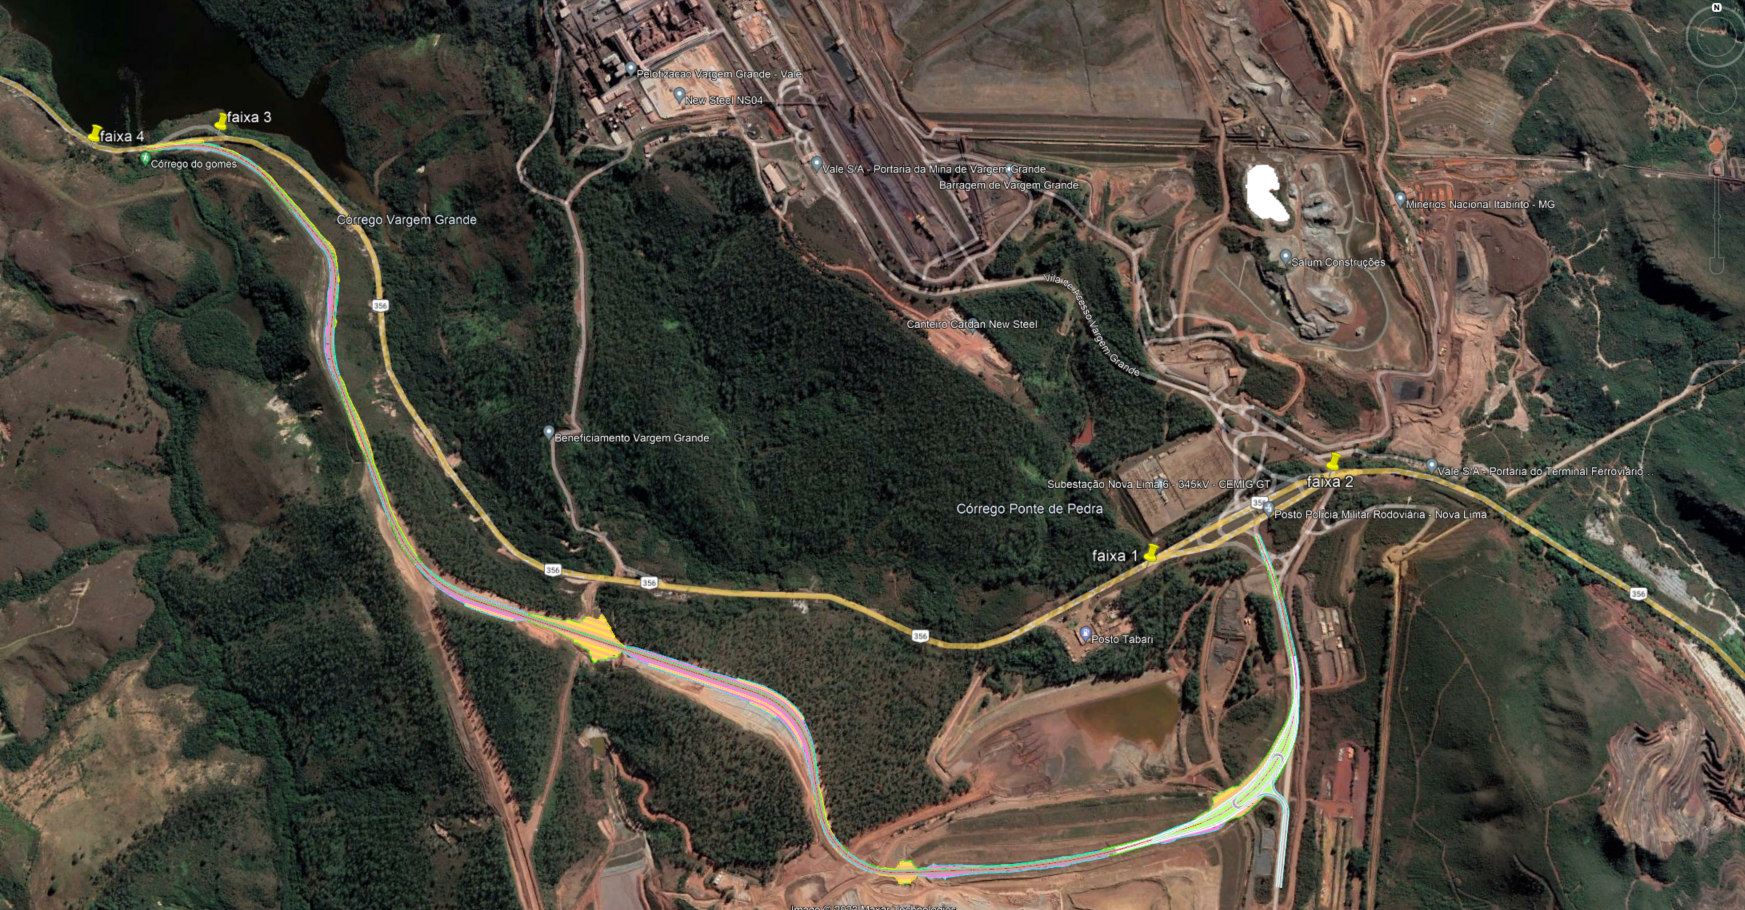 Foto vista de cima de uma região com vegetação verde com vários caminhos com linhas e marcadas em amarelo e alguns terrenos sem nenhuma vegetação, só com a terra marcada.